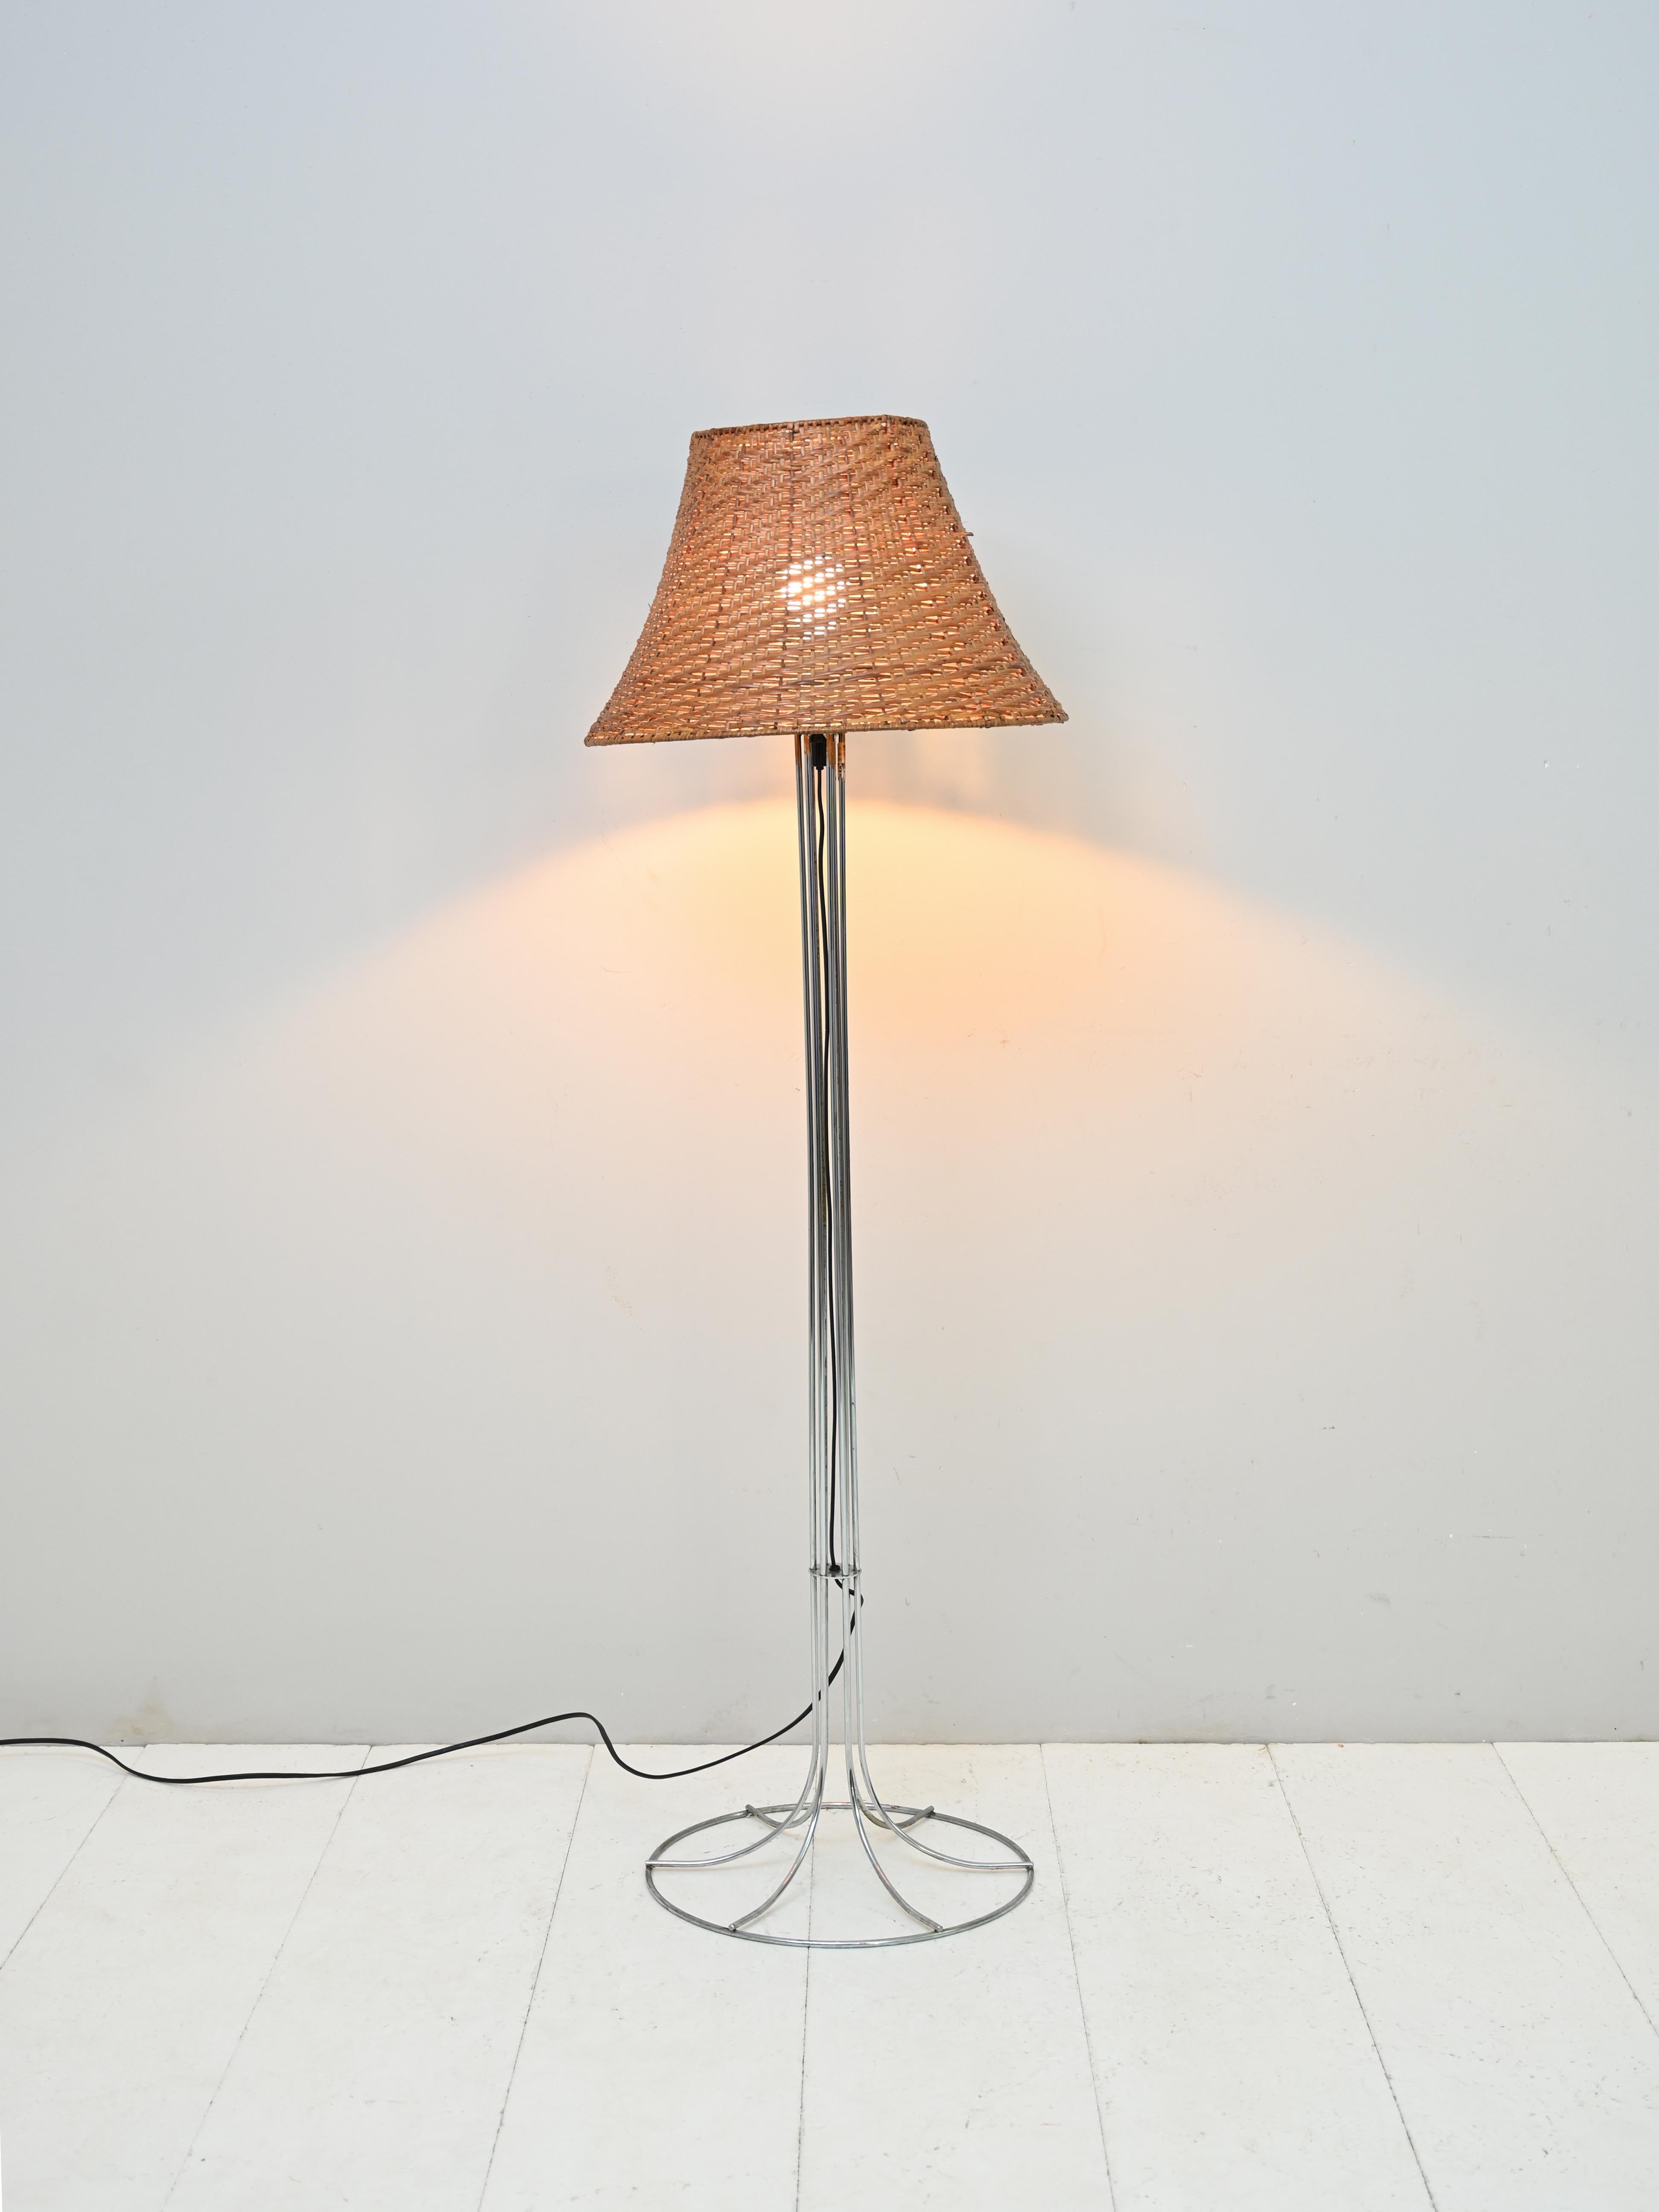 Lampadaire vintage des années 1960.

Lampe scandinave vintage avec une base en métal et un abat-jour en rotin tressé.

Une pièce au design moderne qui crée un éclairage chaud et diffus dans la pièce.

La structure est constituée de lamelles